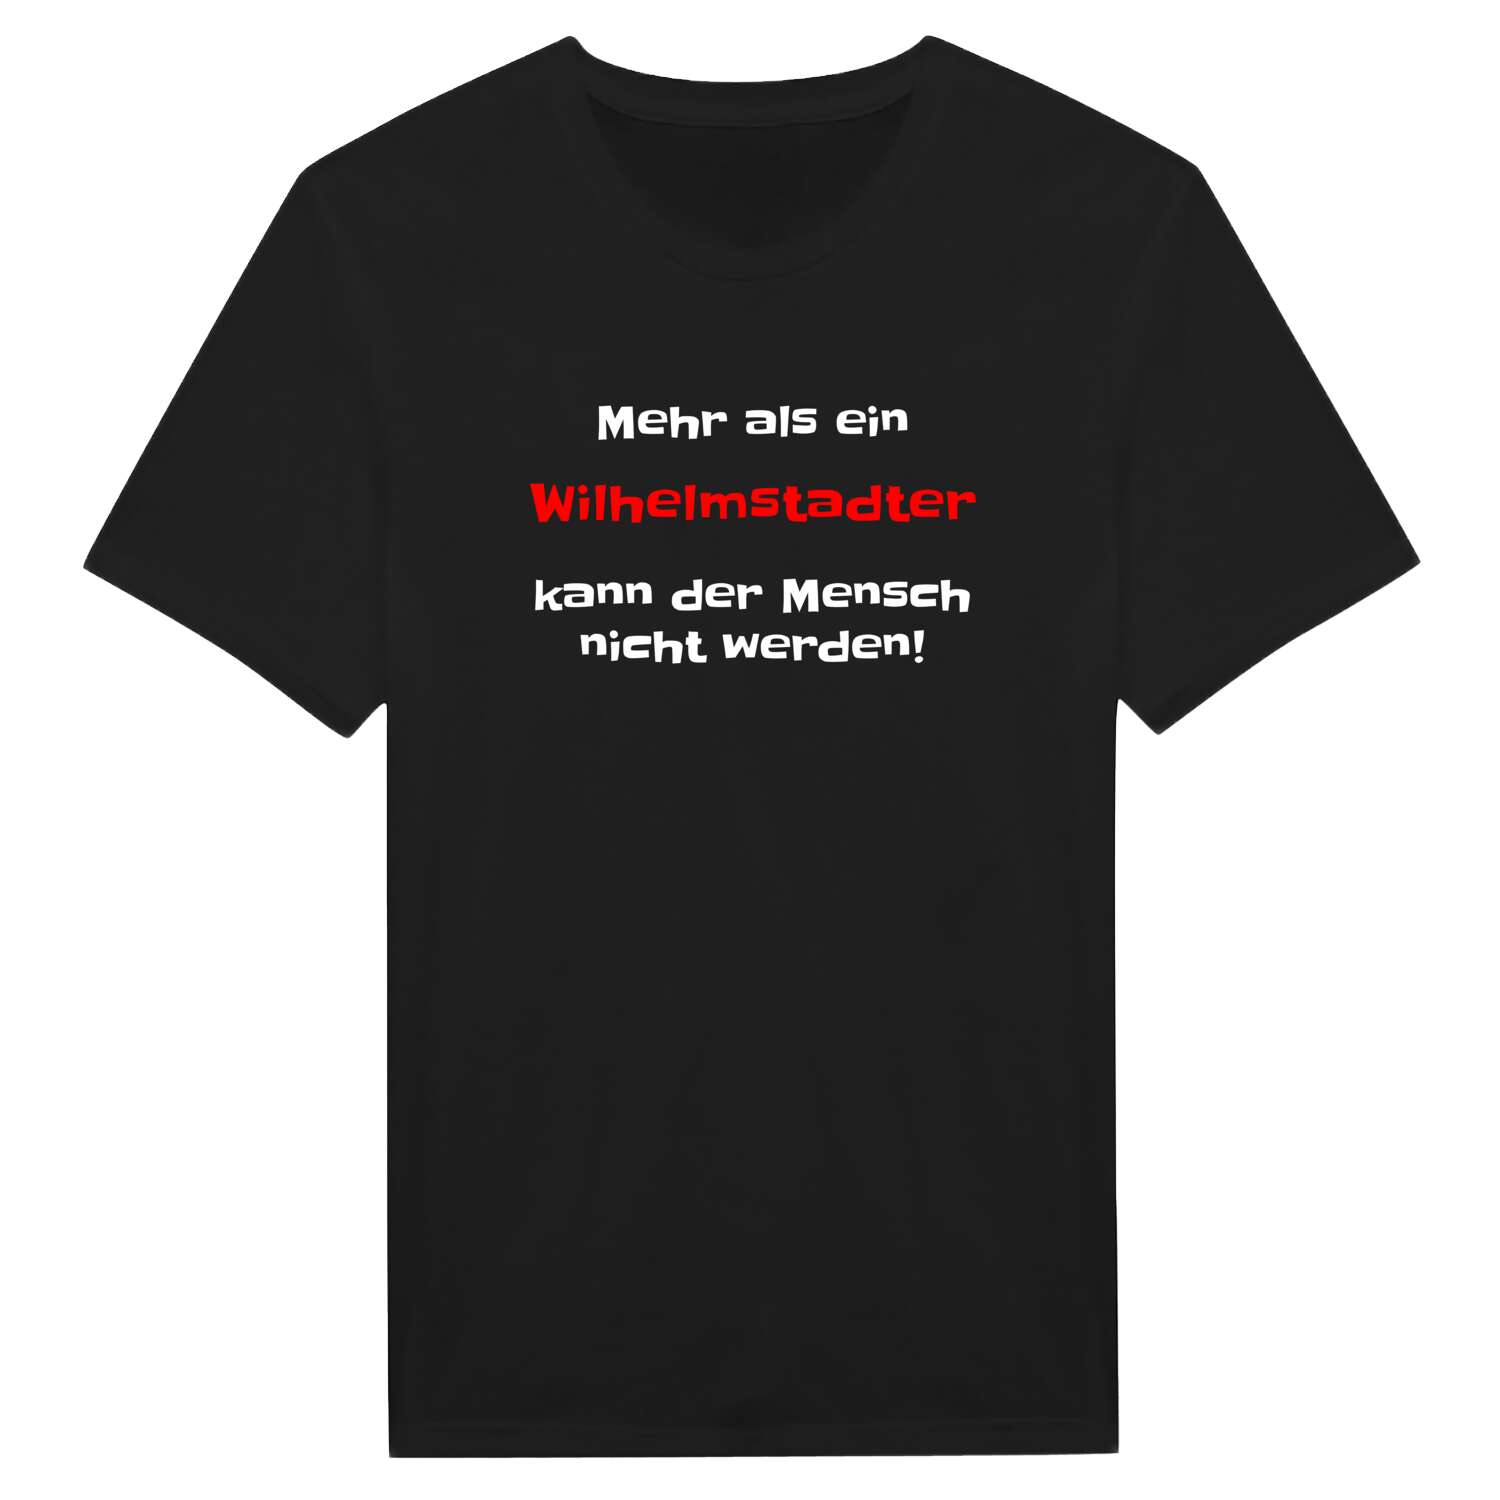 Wilhelmstadt T-Shirt »Mehr als ein«